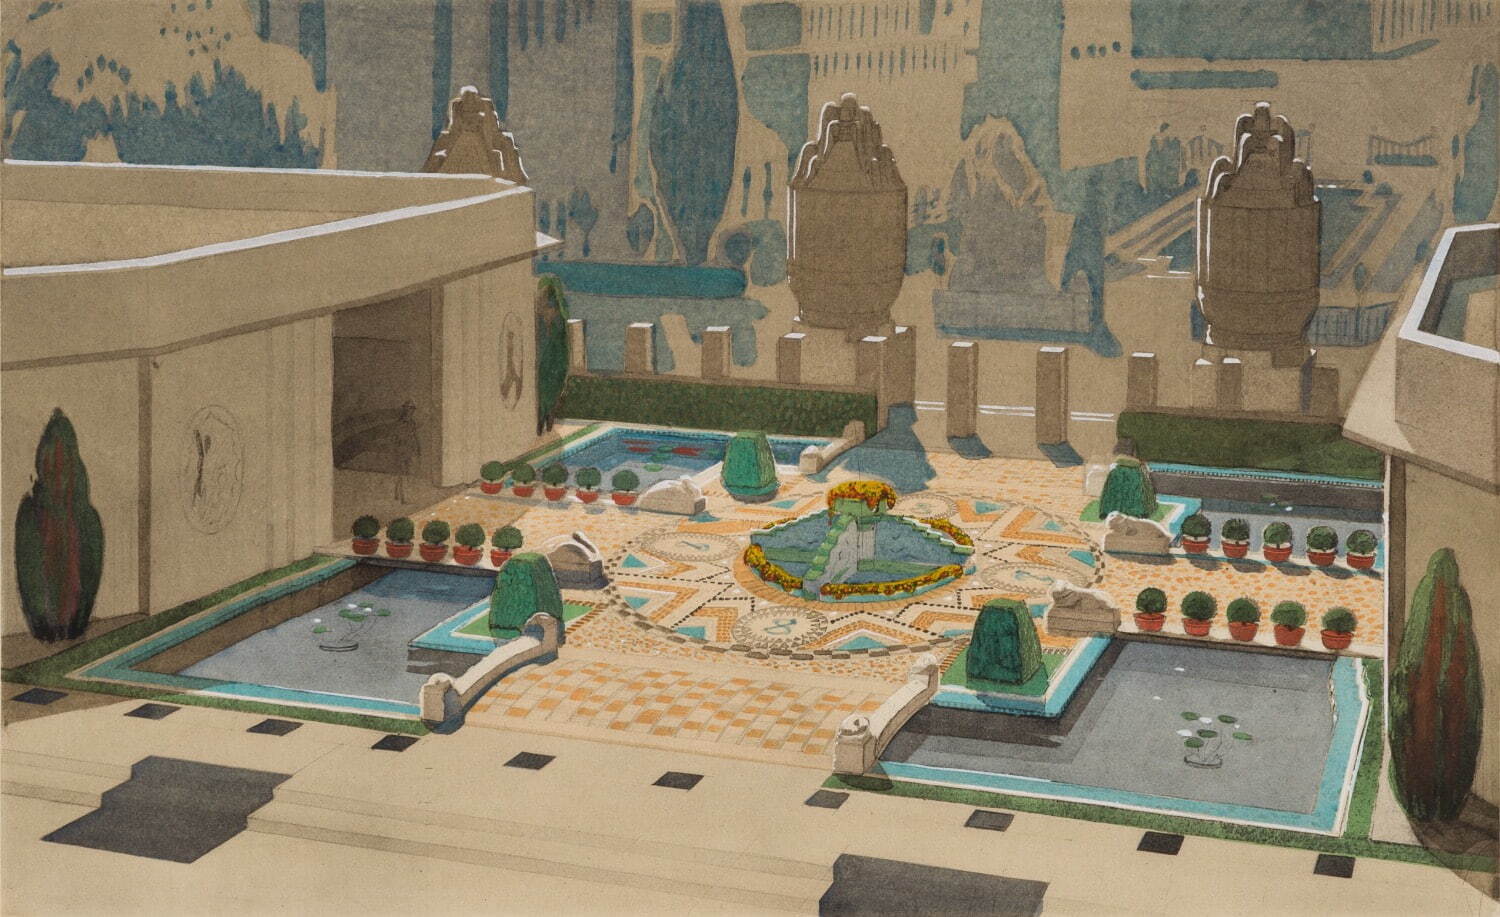 アンリ・ラパン 「セーヴル製陶所館前庭」 『1925年 庭園』より
1926年 東京都庭園美術館蔵